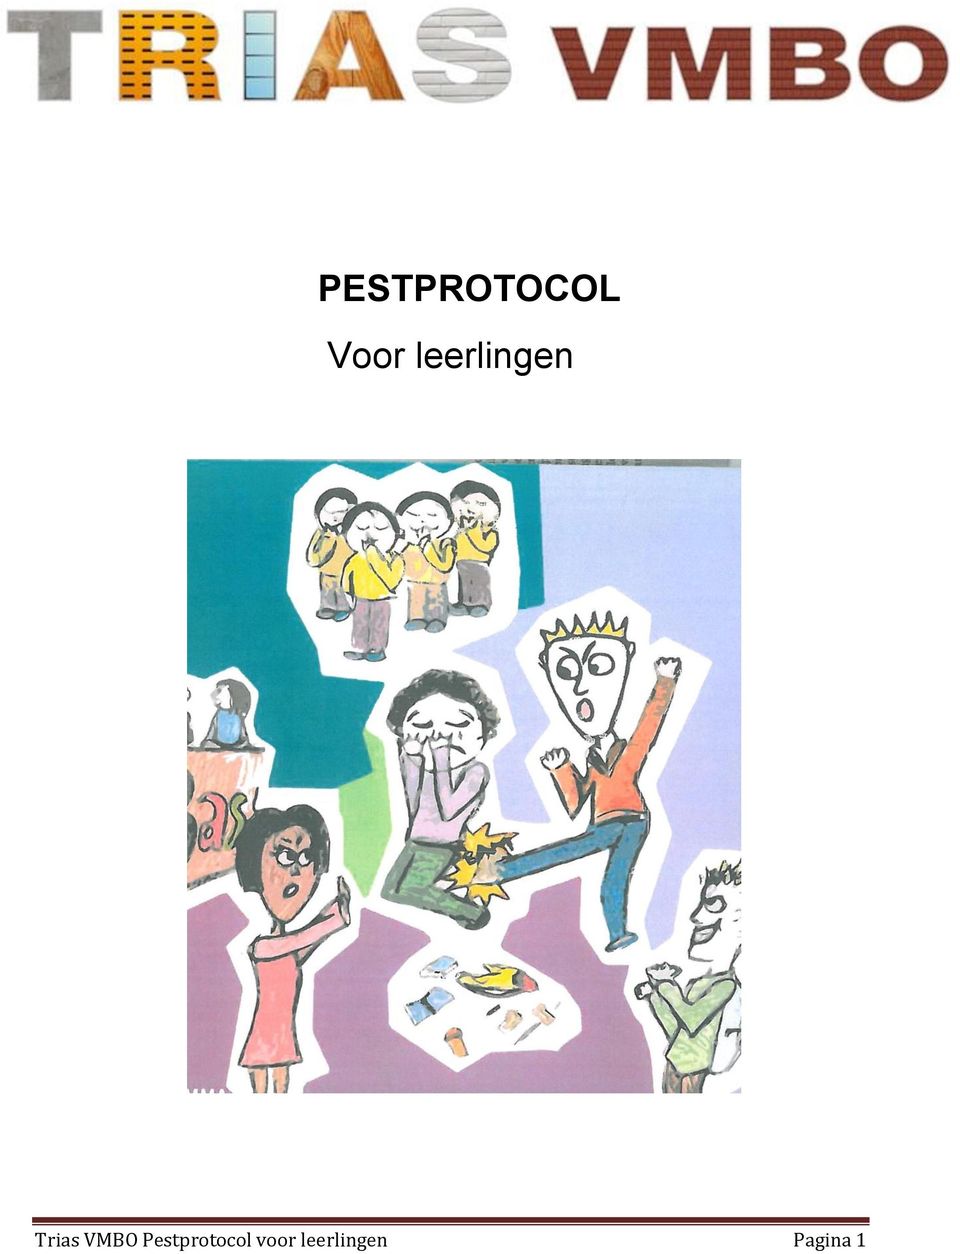 VMBO Pestprotocol